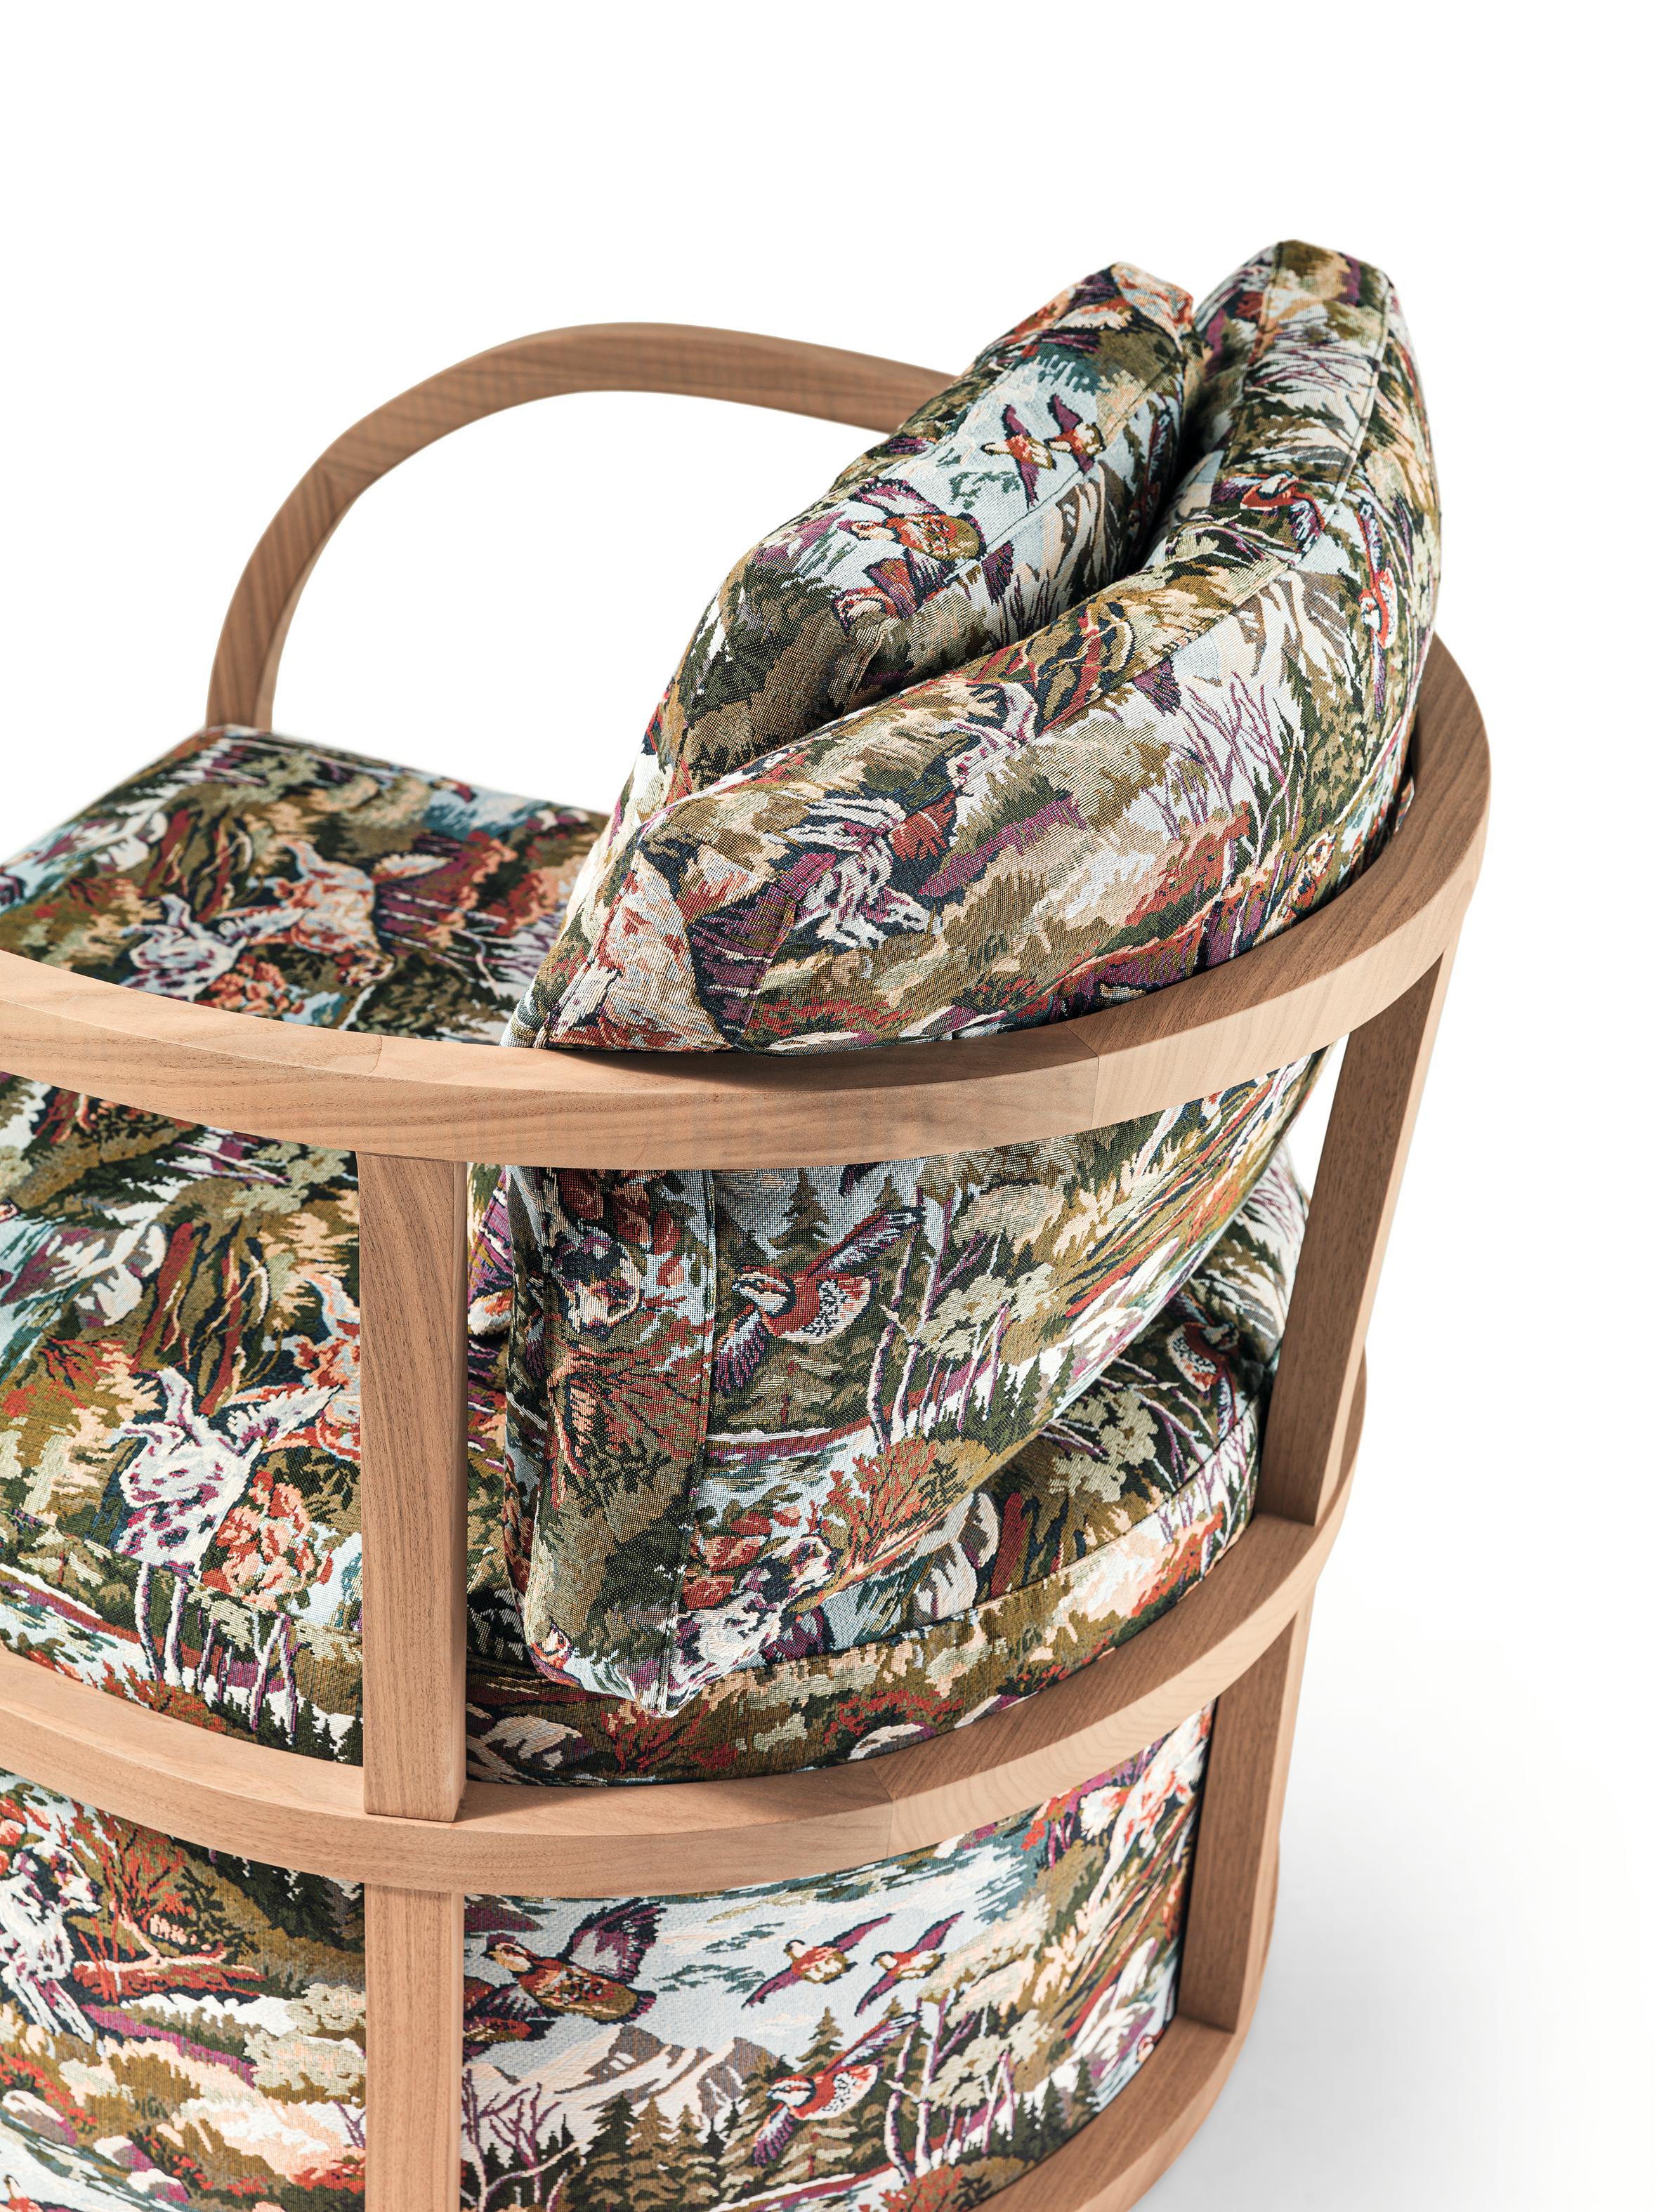 FUSTA Curve Lounge Armchair in Solid Canaletto Walnut by Storagemilano In New Condition For Sale In Lentate sul Seveso, Monza e Brianza